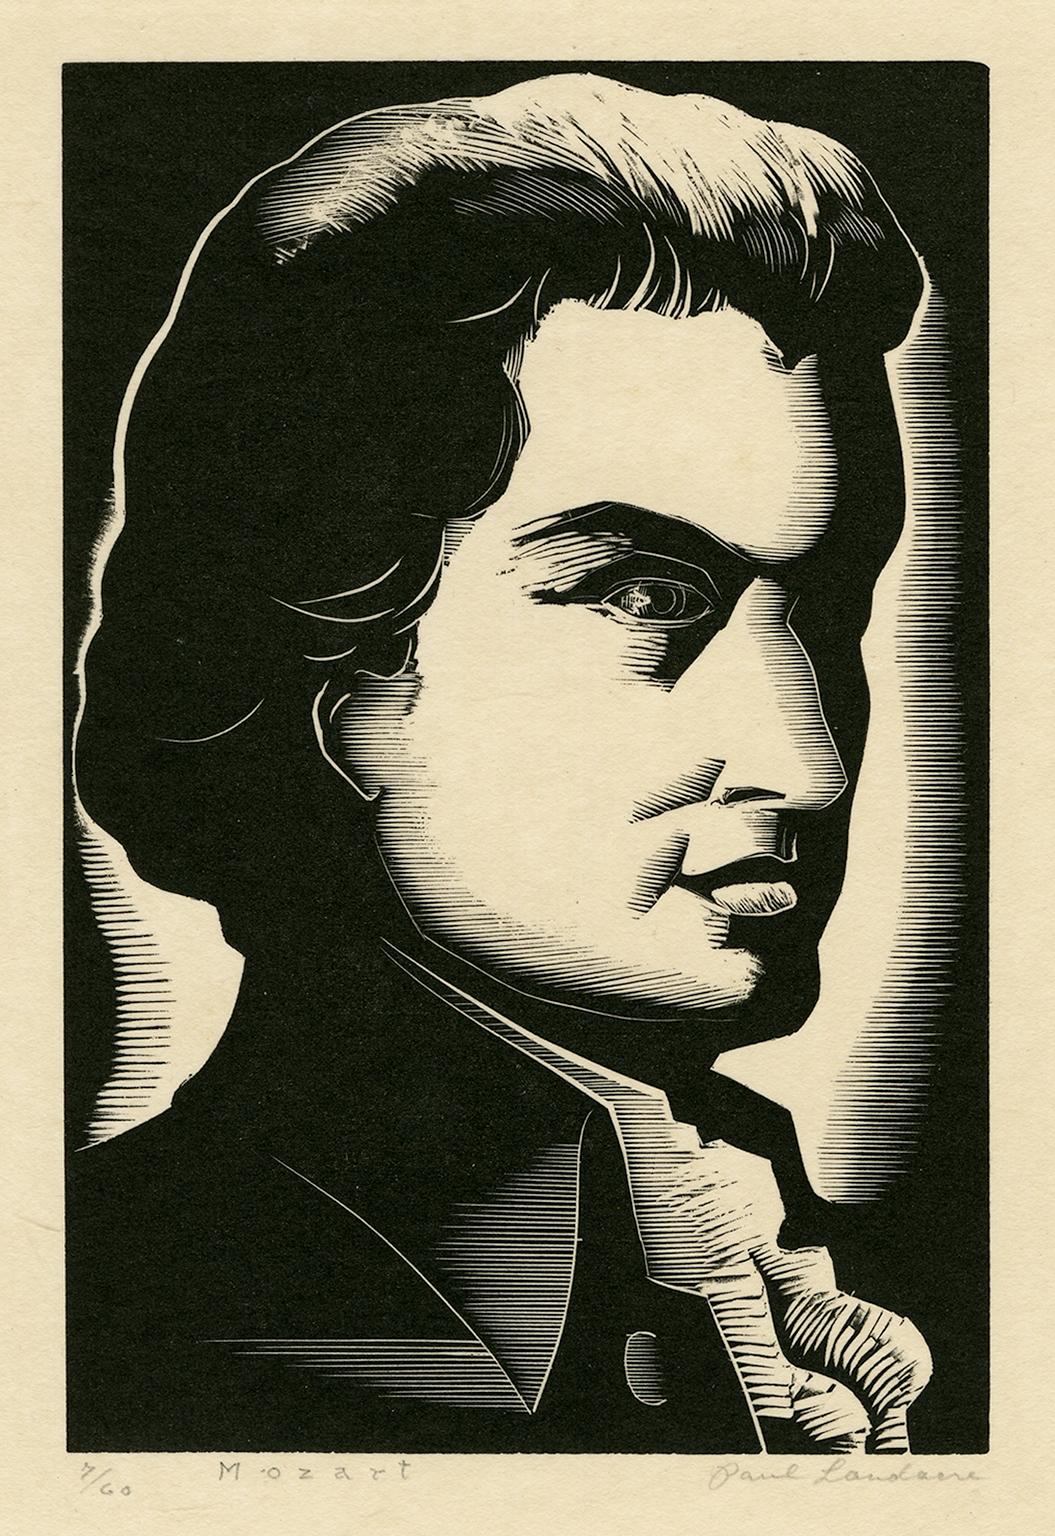 Paul Landacre Portrait Print - Mozart